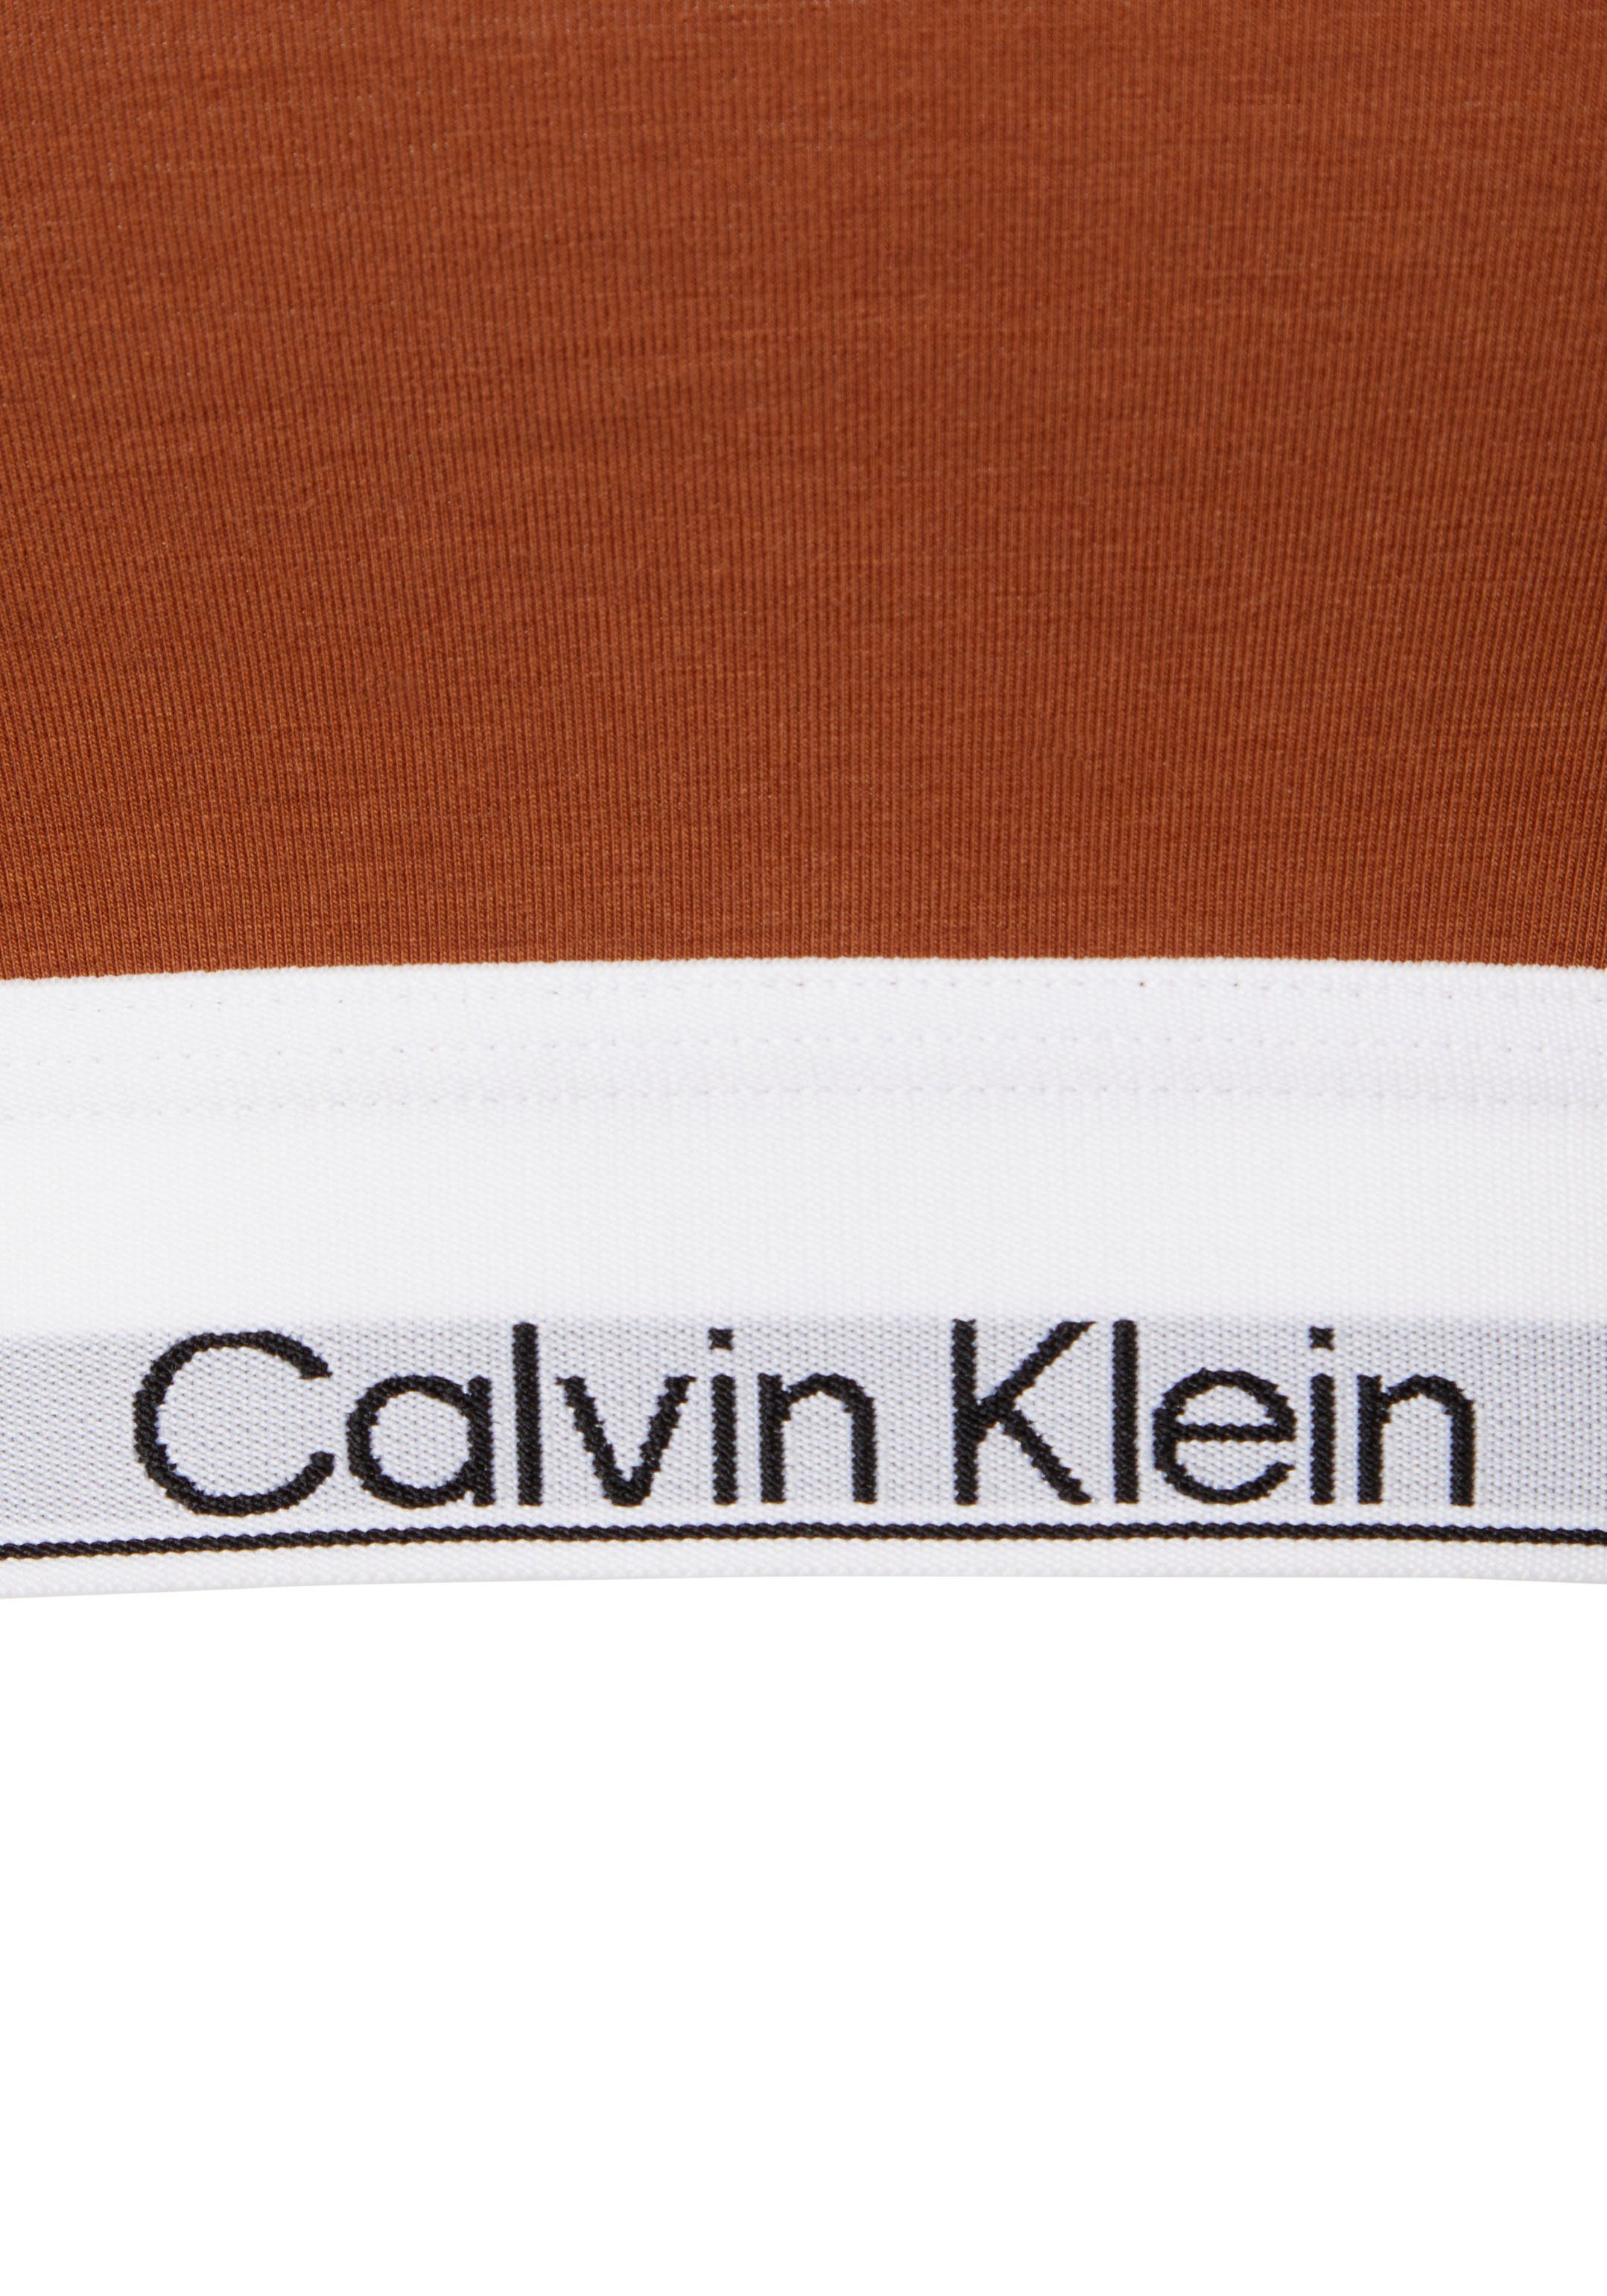 Klein auf Underwear Logodruck dem braun mit Bralette Calvin Elastik-Unterbrustband